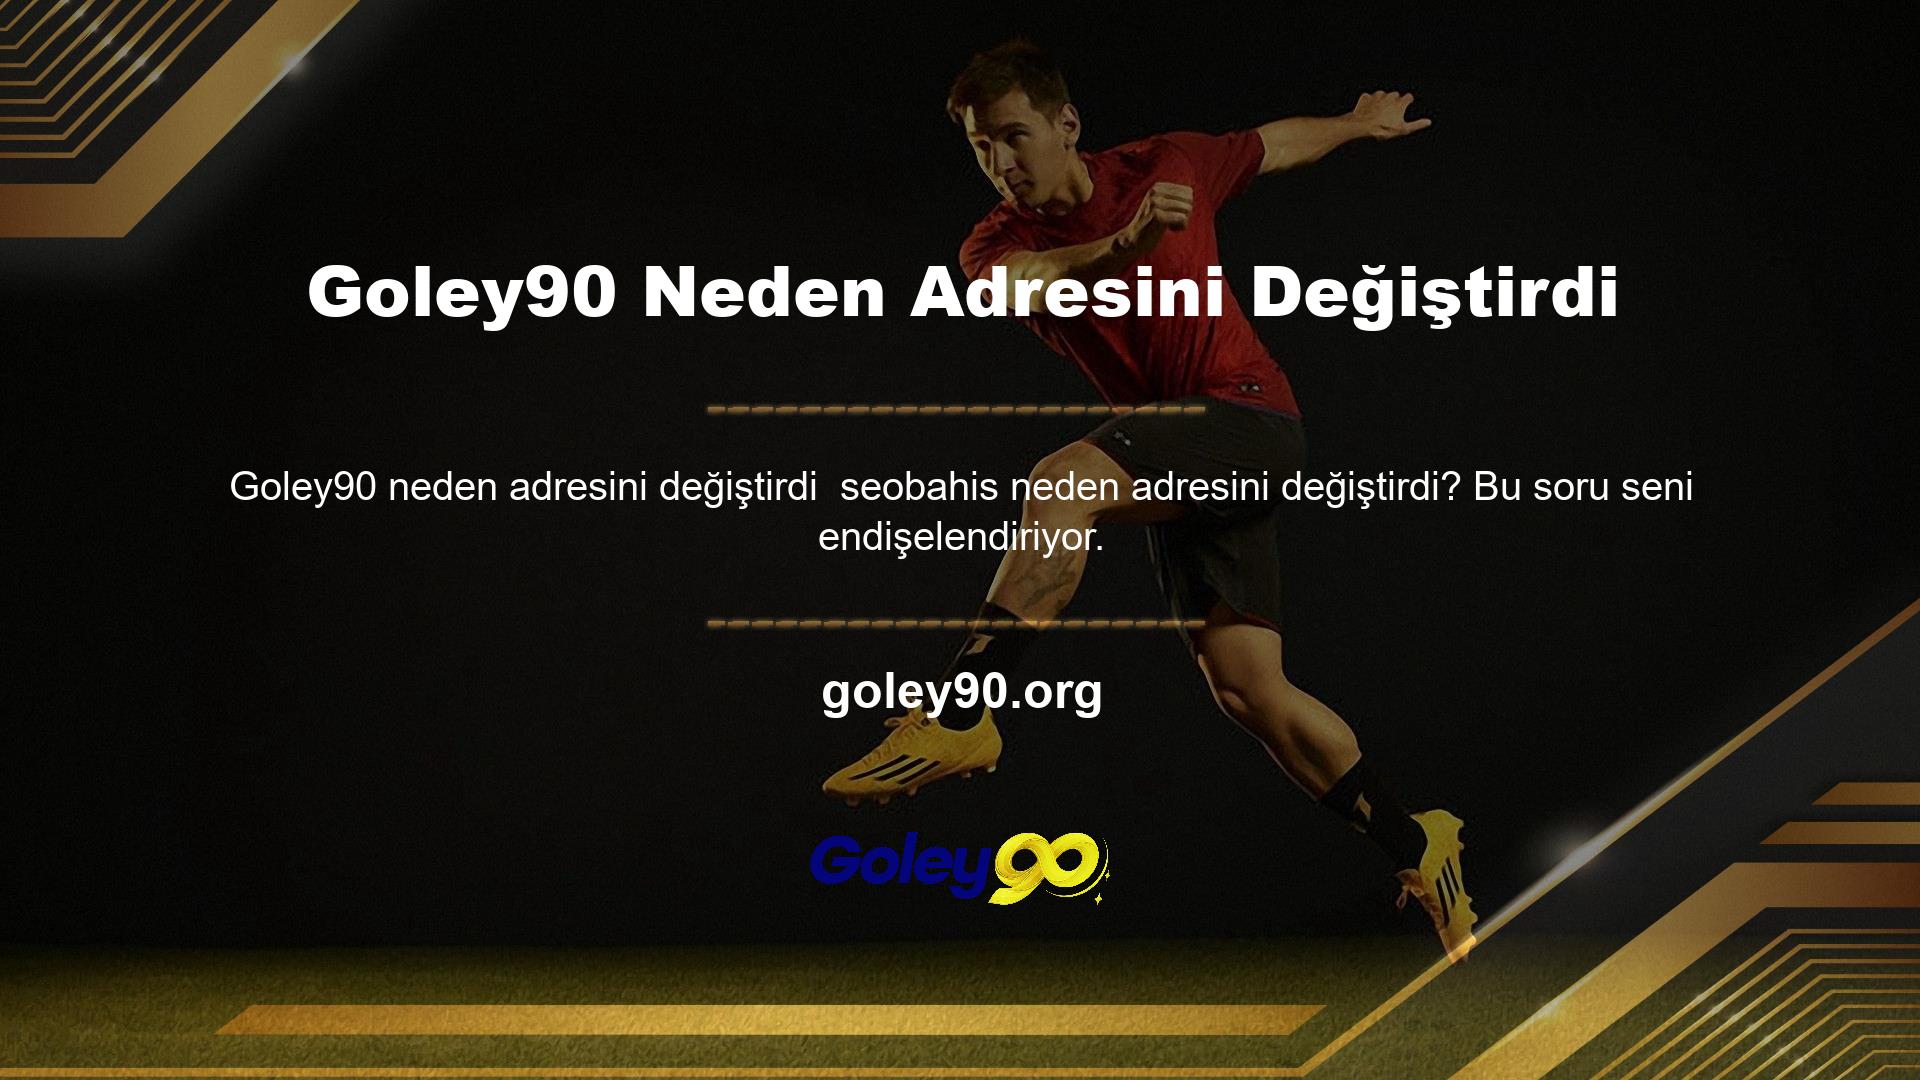 Türkiye’deki Goley90 servisi, örgüt tarafından yasadışı bir şekilde kapatıldı